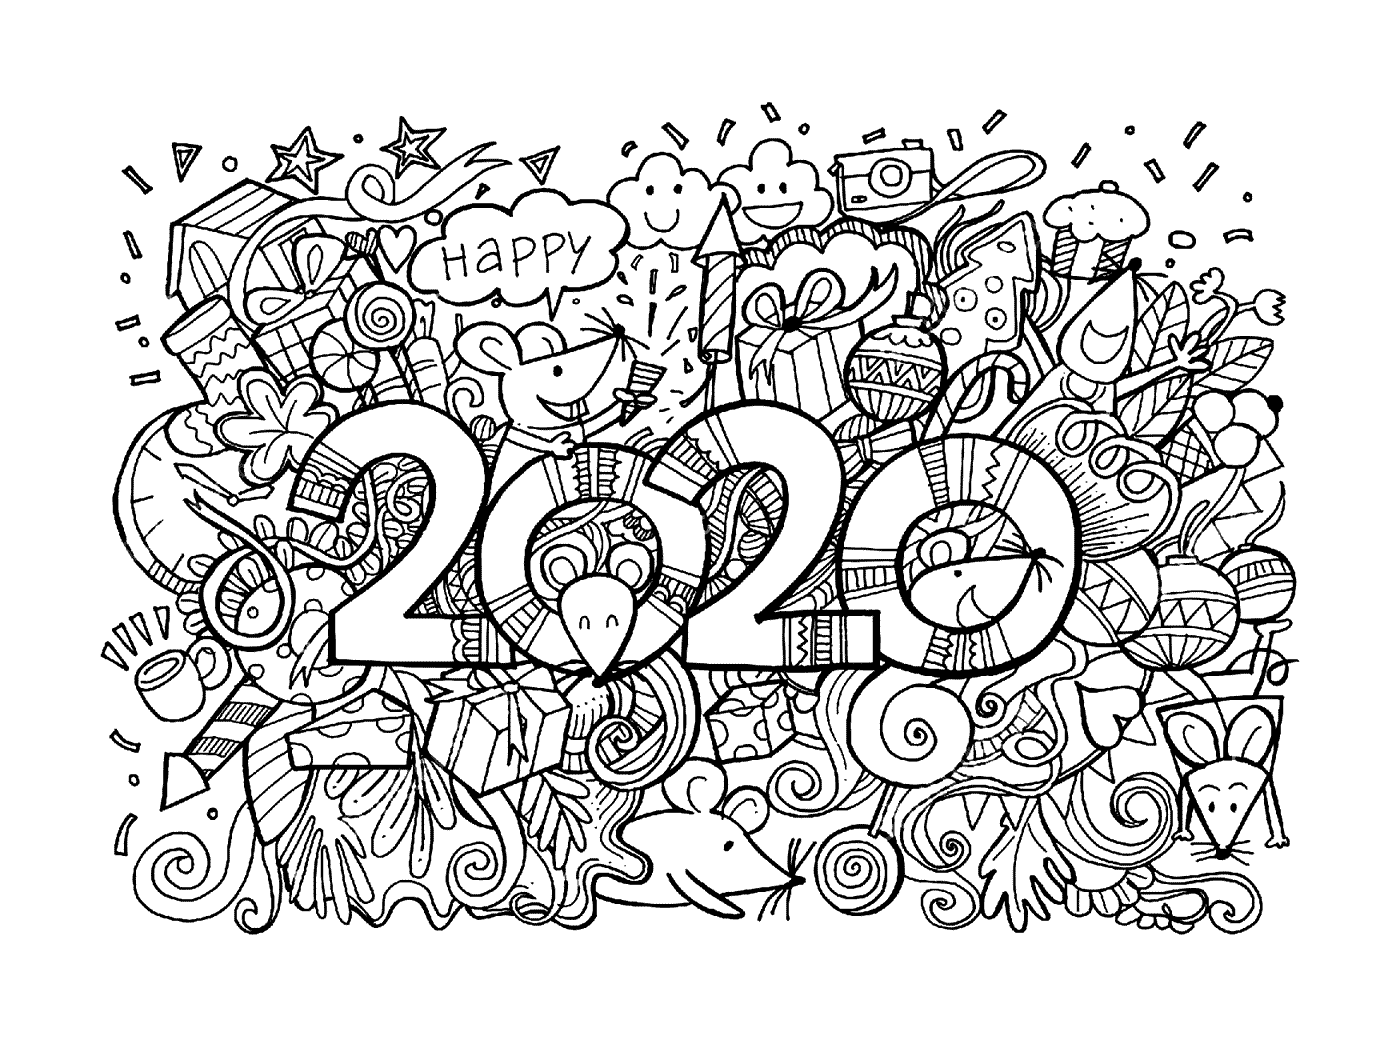   Bonne année 2020, nouvel an lunaire avec de nombreuses souris 